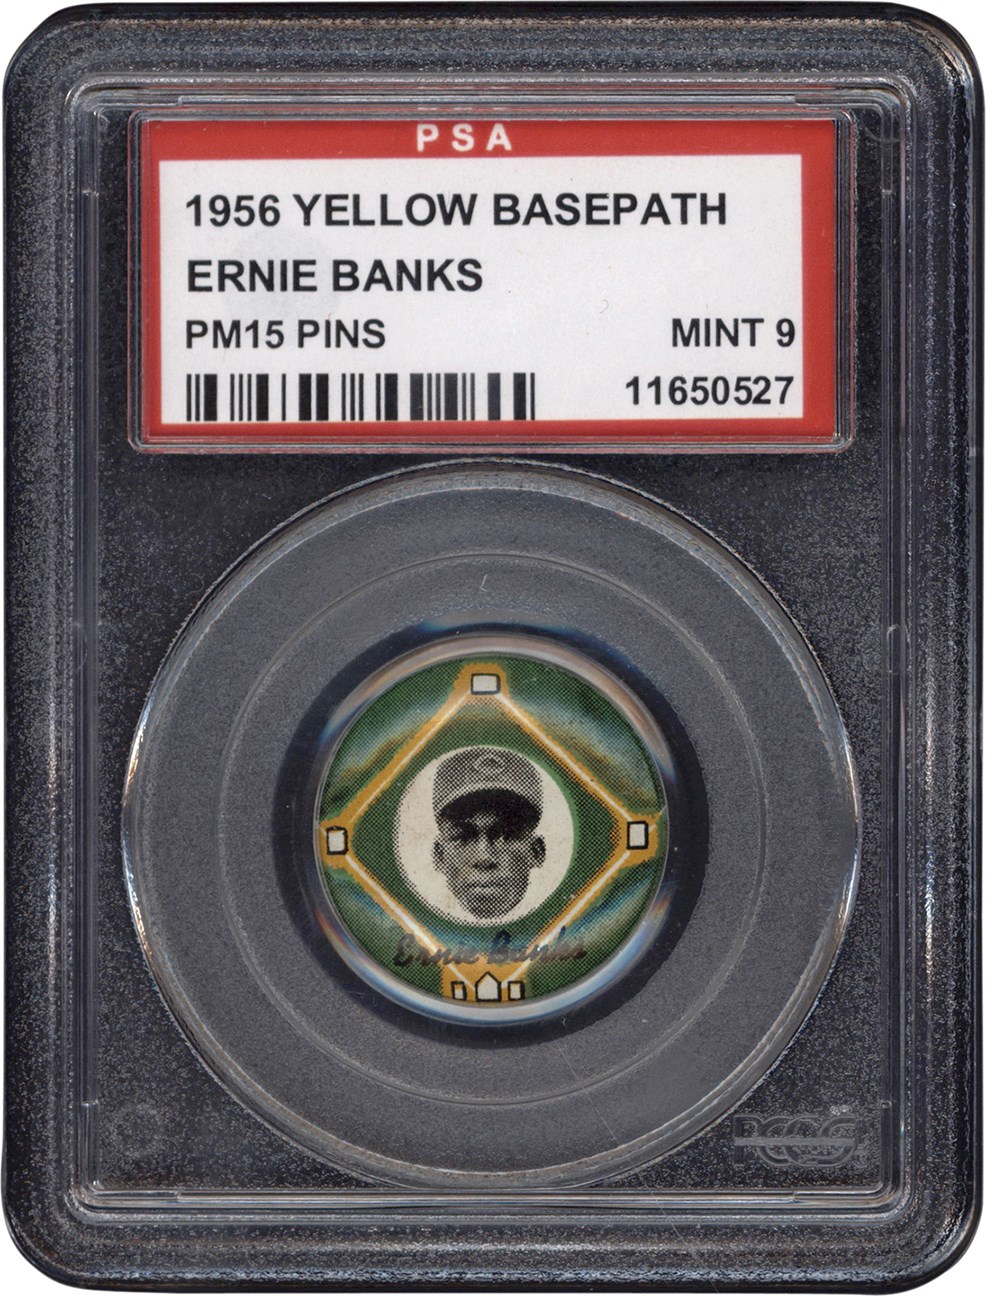 - 1956 PM15 Yellow Basepath Ernie Banks Pin PSA MINT 9 (Pop 4)